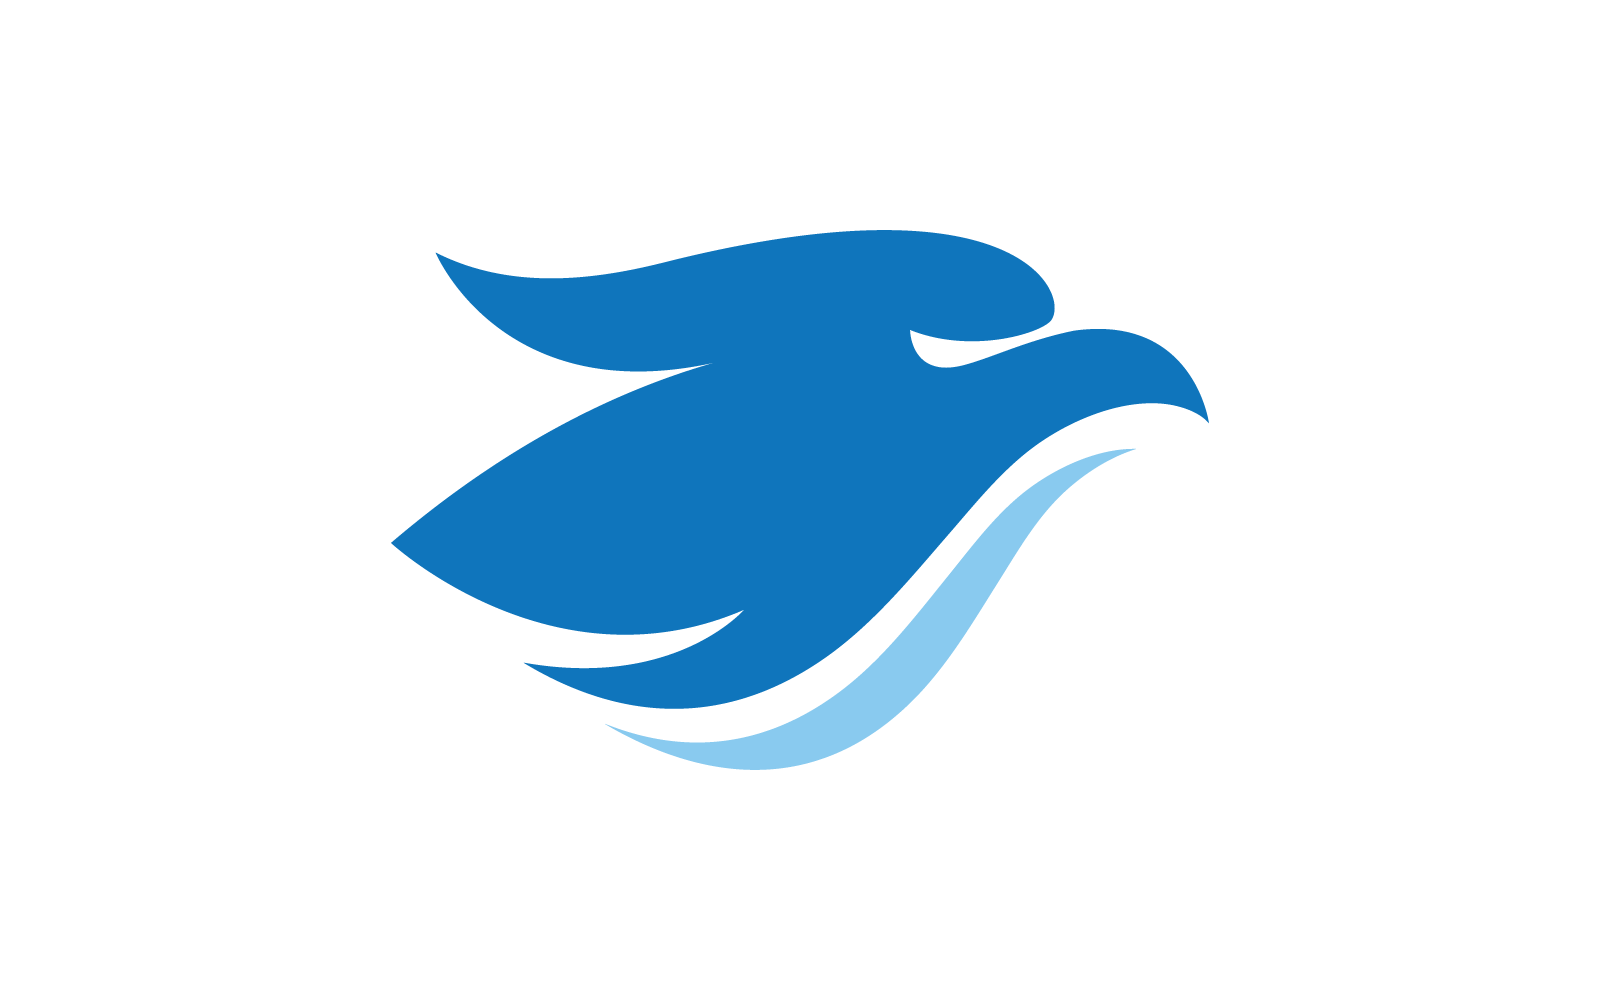 Falcon eagle bird illustration logo design icon vector Logo Template